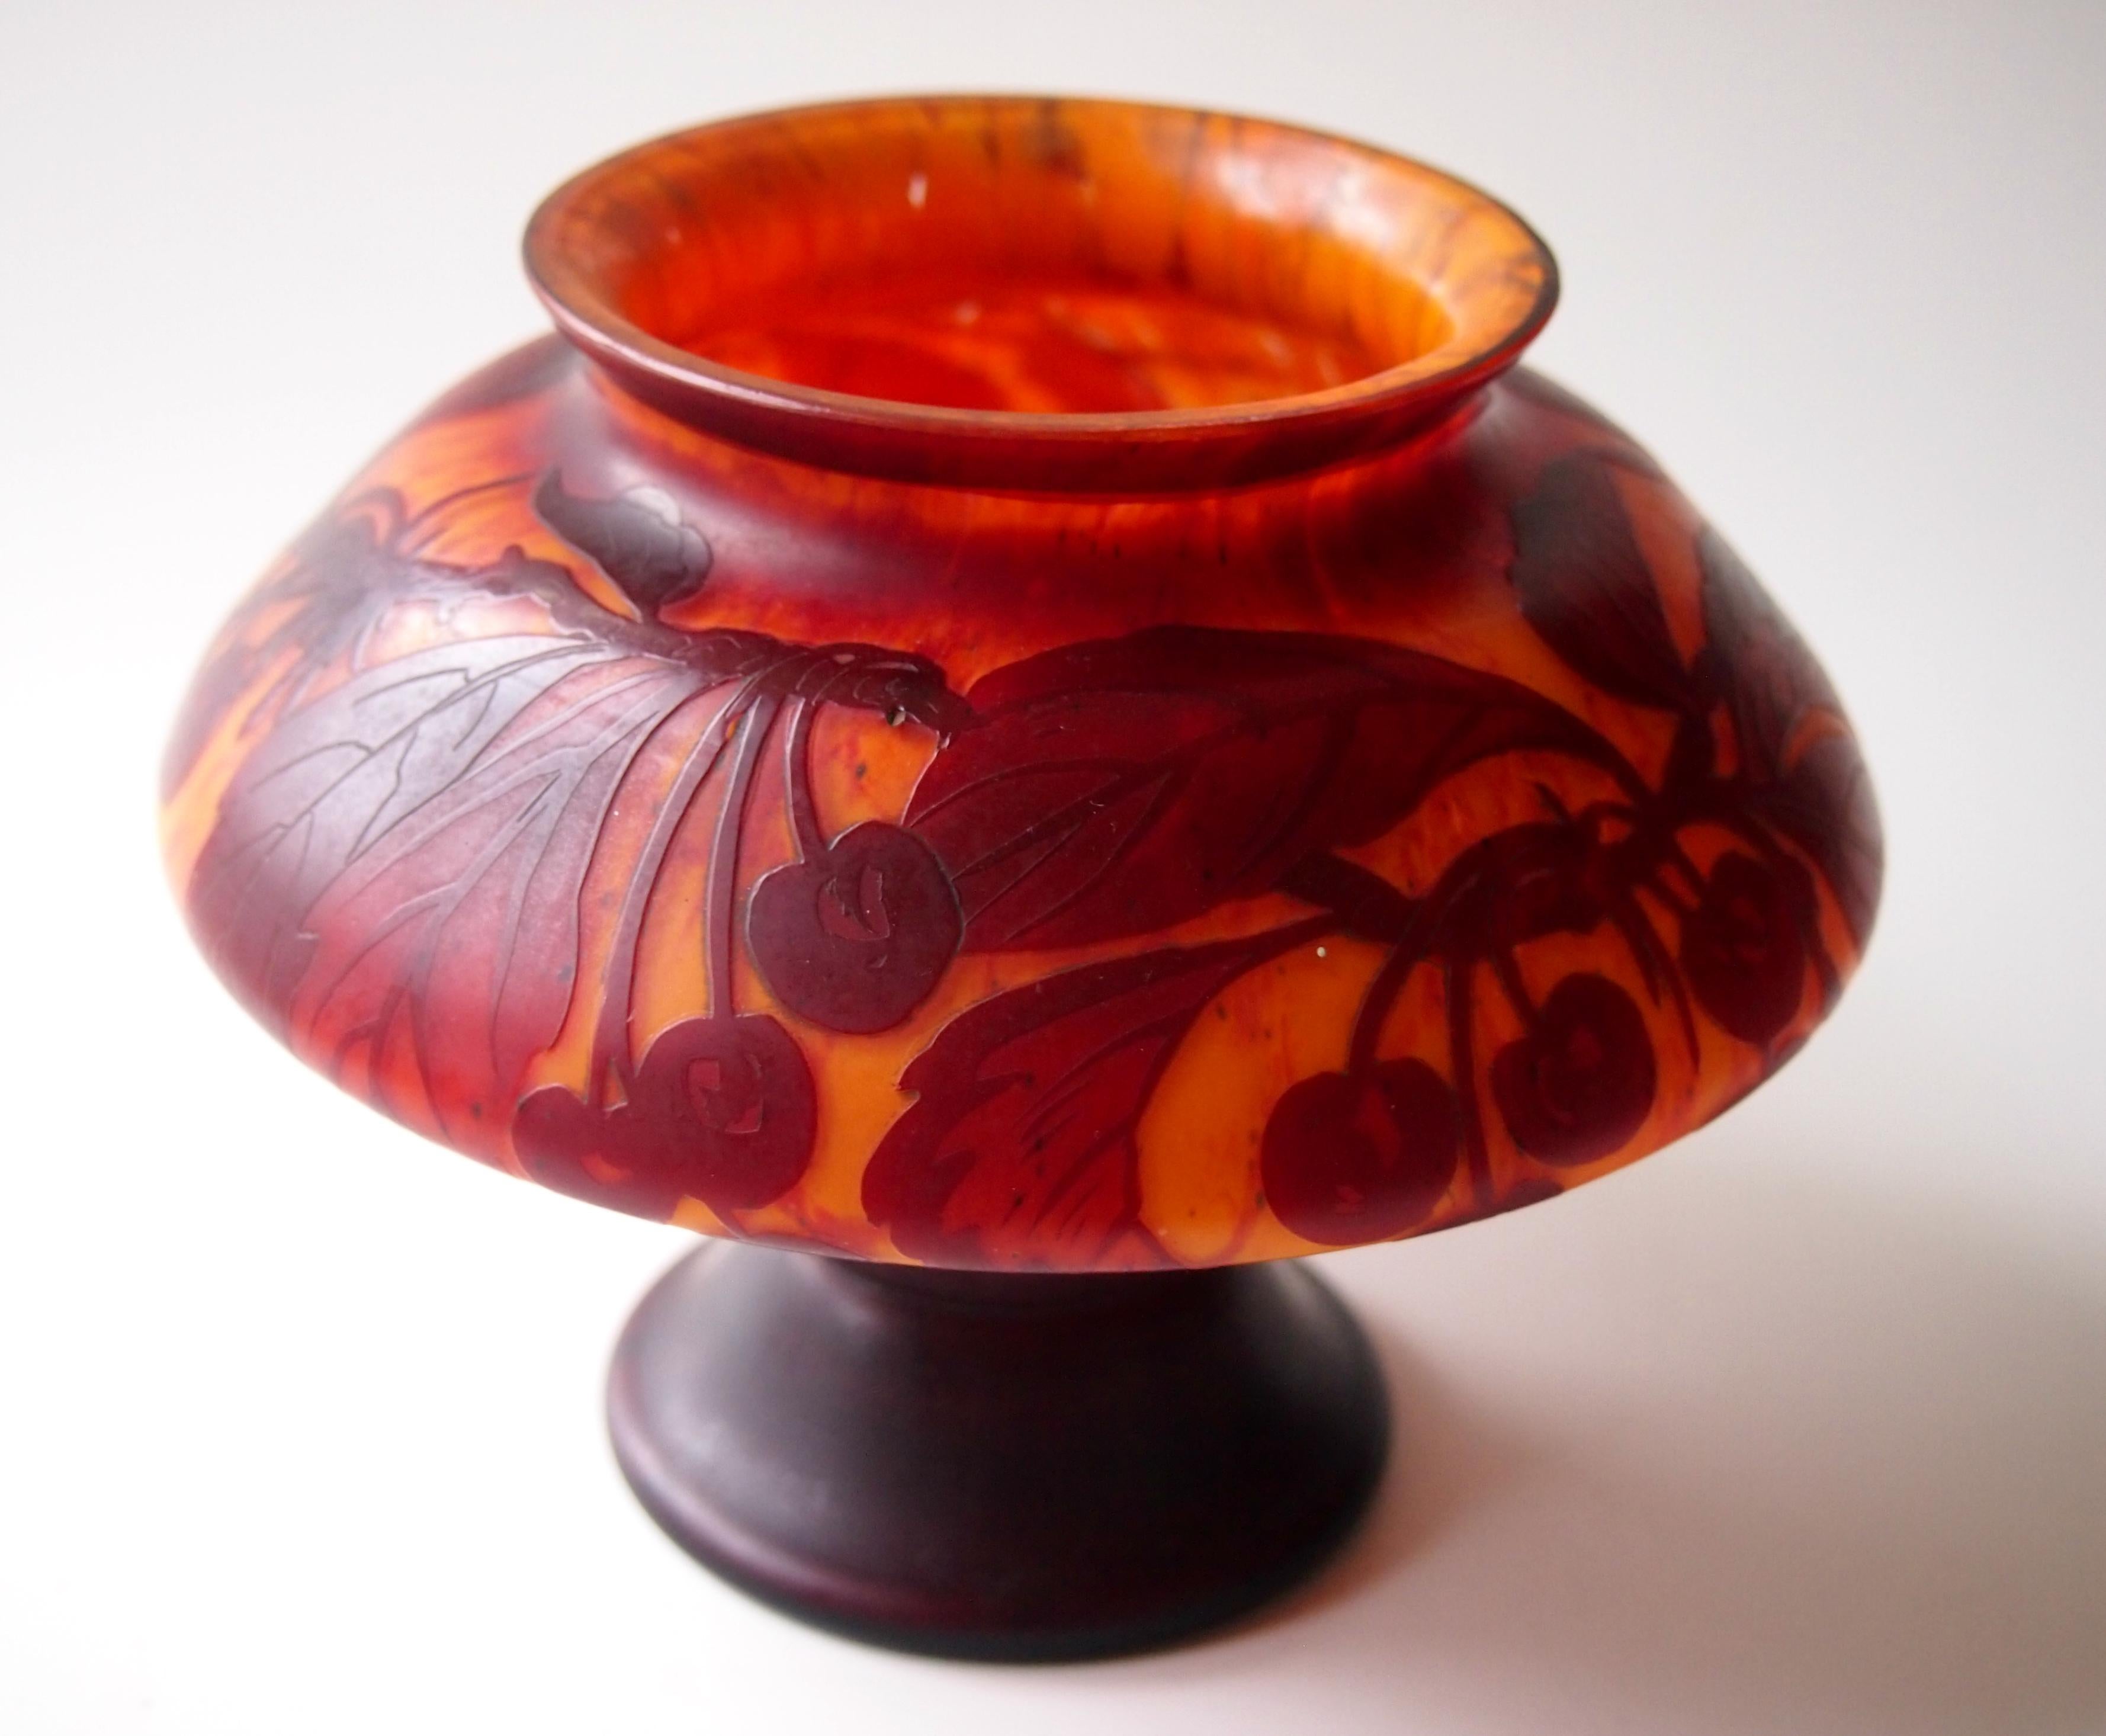 Super vase à pied en camée à l'acide Kralik - en rouge/brun sur fond orange tacheté, représentant des baies sur des branches et signé en camée D'Aurys (voir images 3 et 4). Le vase est doté d'un pied, d'une courte tige et d'une généreuse partie